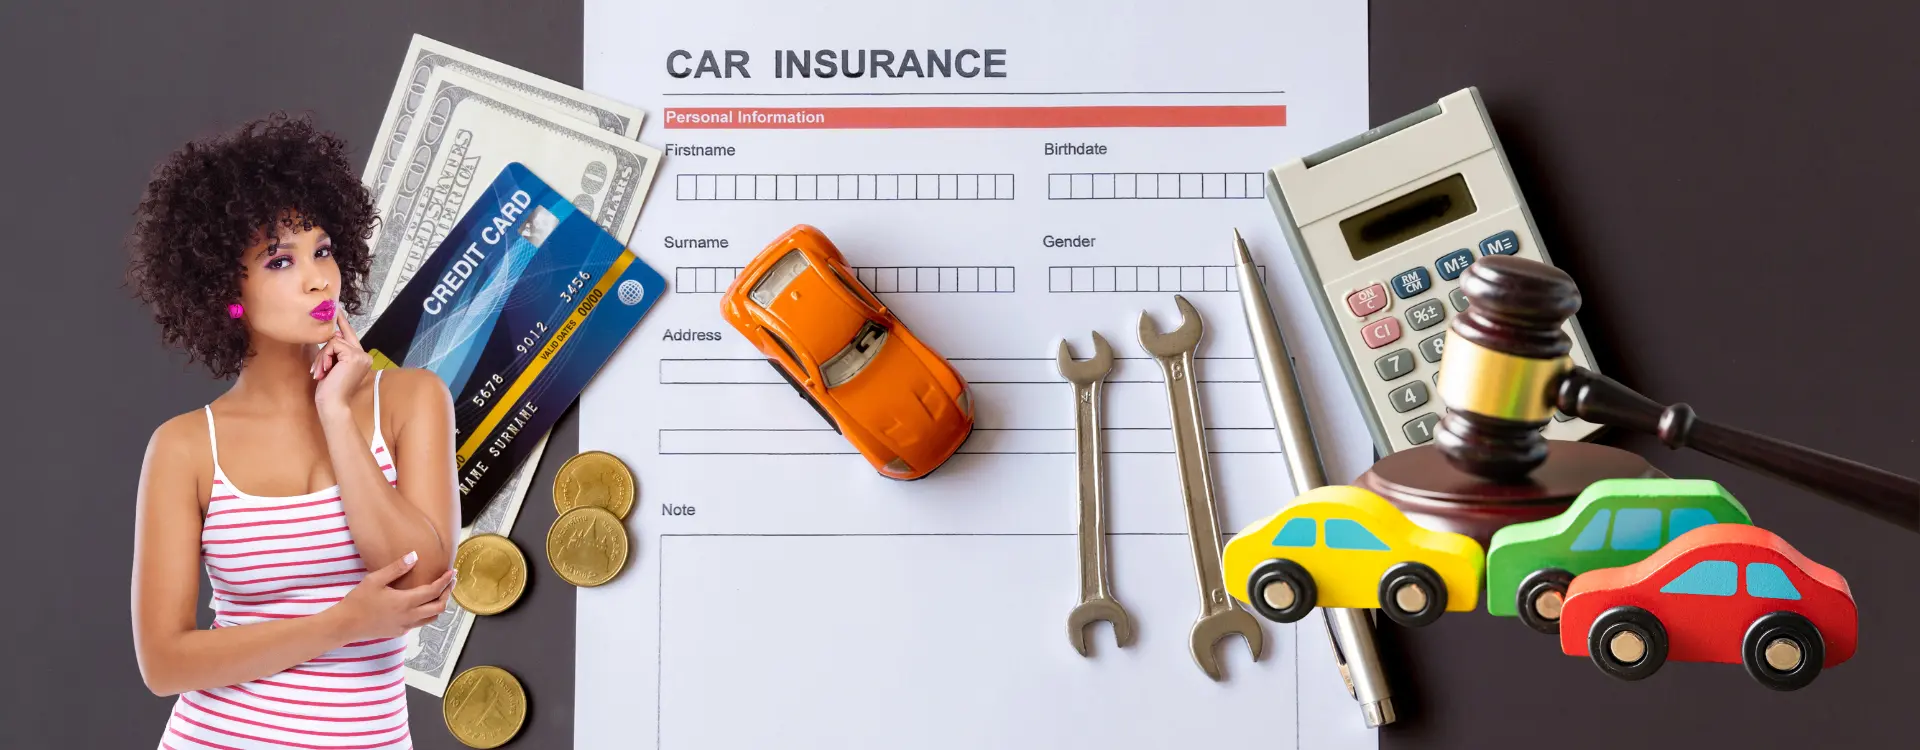 auto insurance coverages case studies